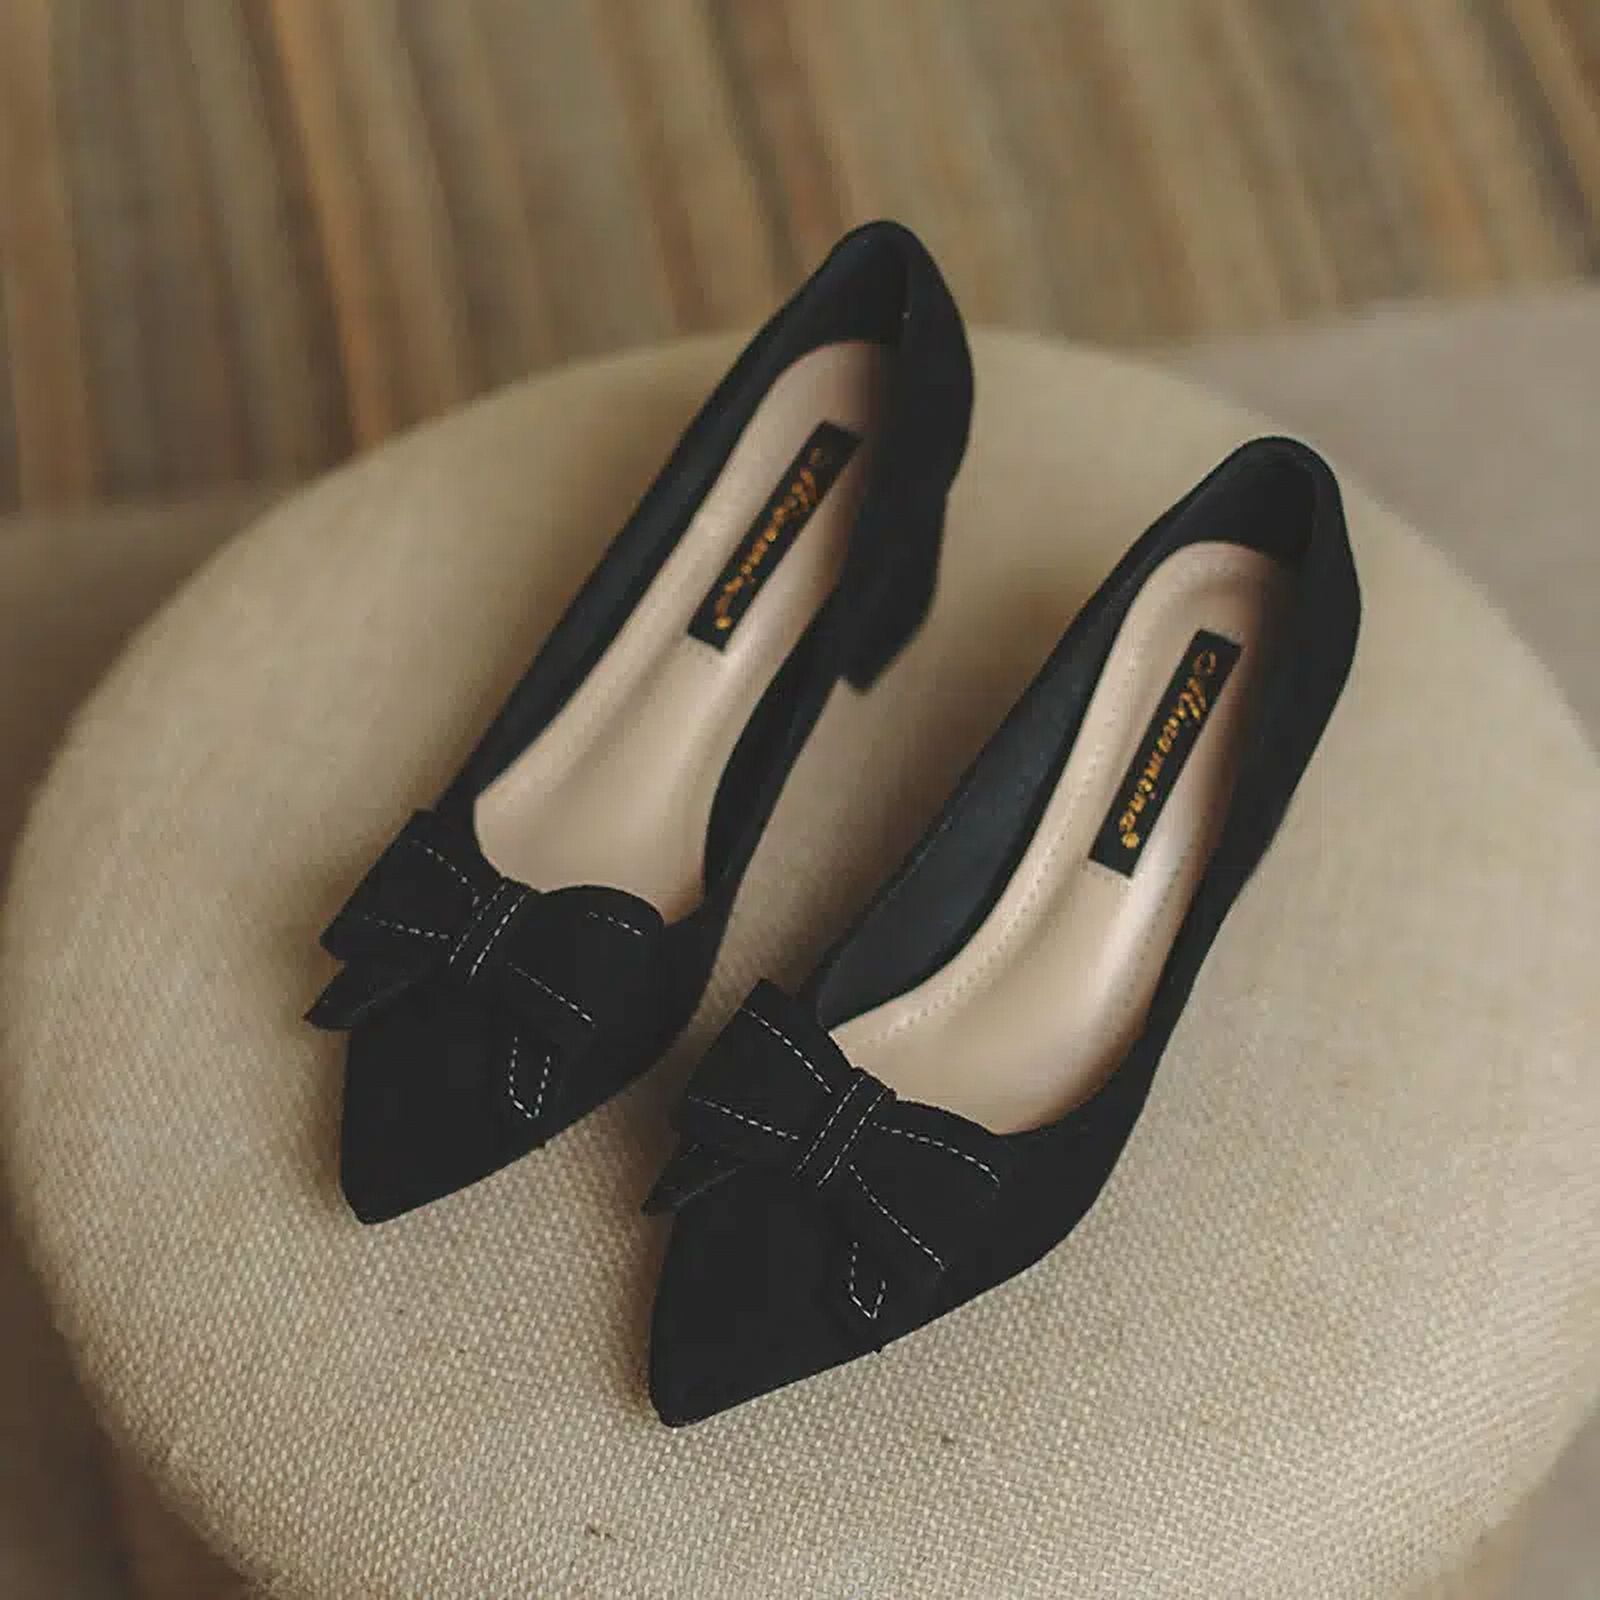 The most amazing Zara heels #newinzara #zaraheels #zaratiktok | TikTok